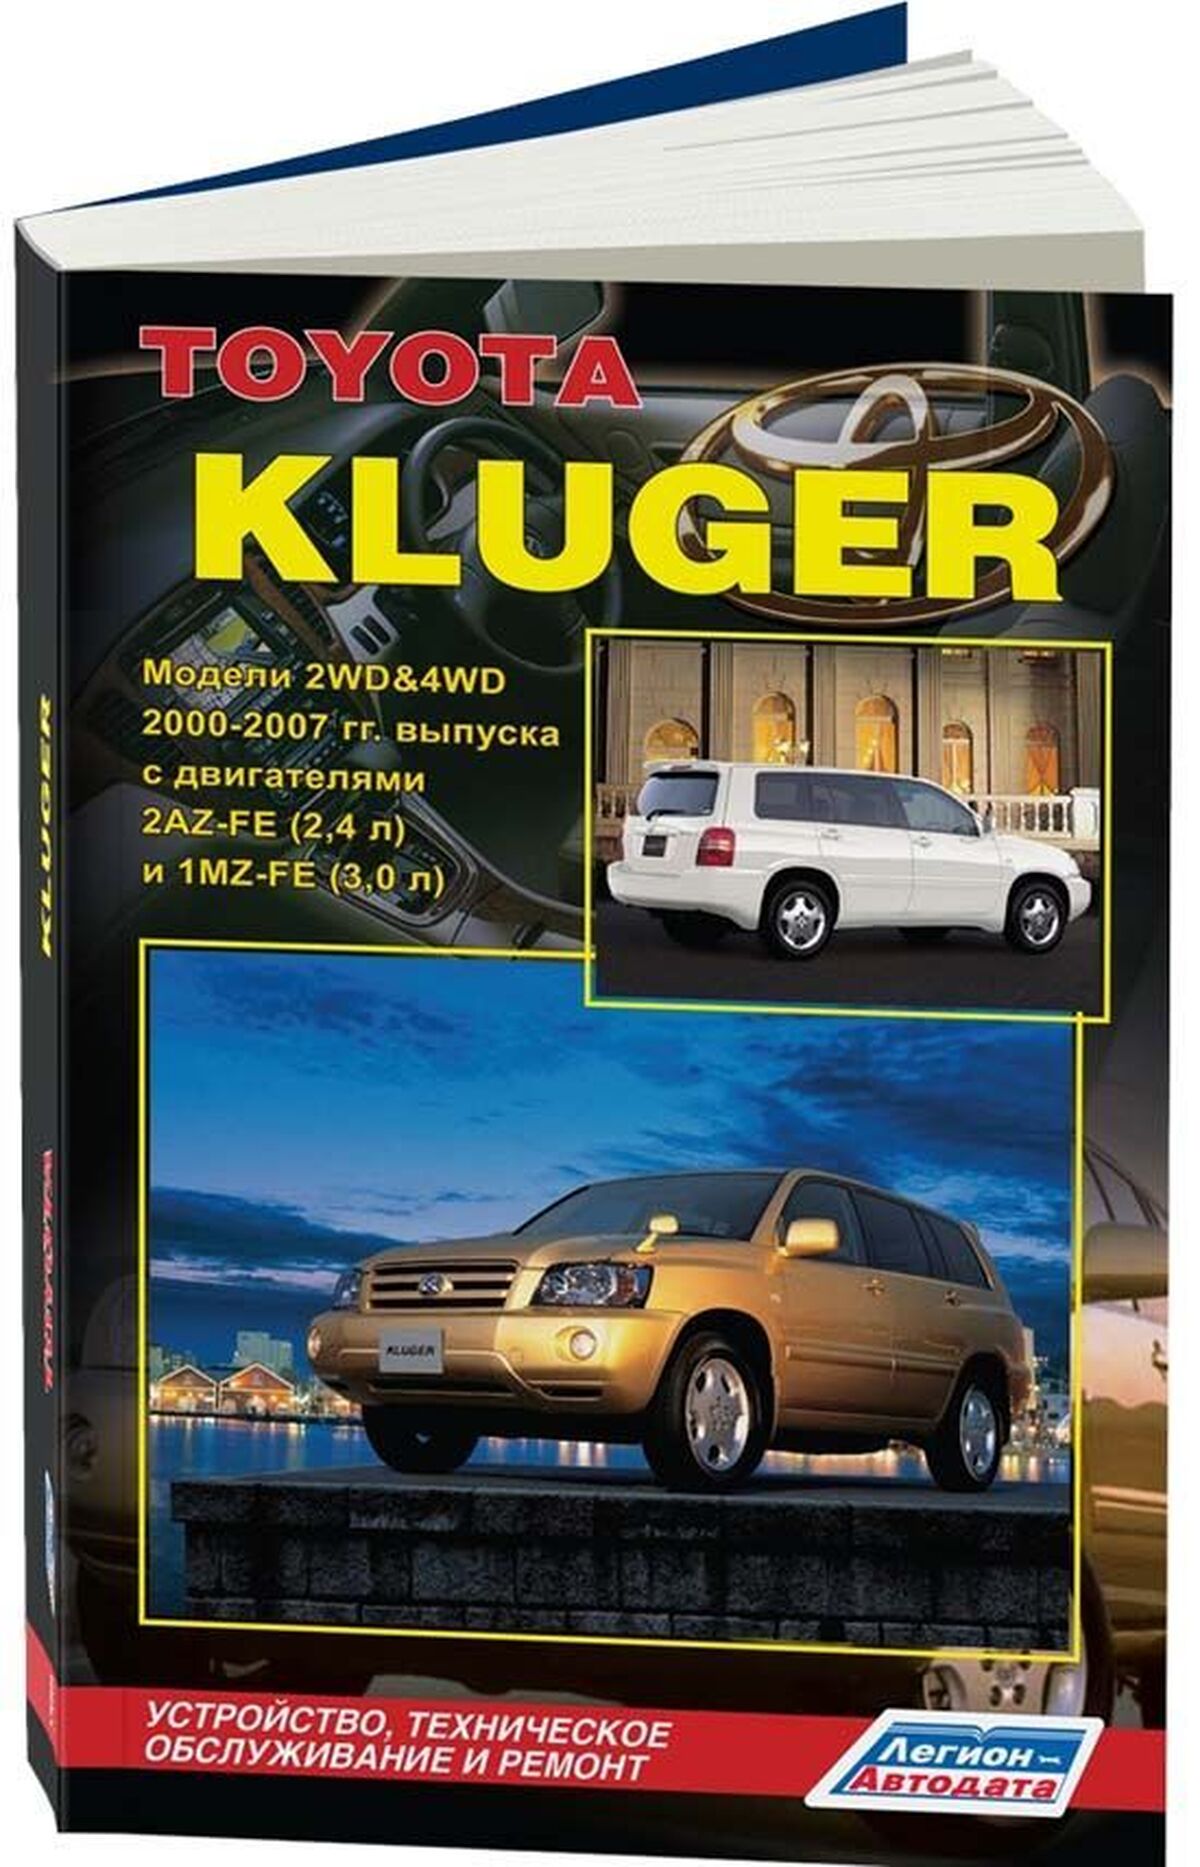 Книга: TOYOTA KLUGER (б) 2000-2007 г.в., рем., экспл., то | Легион-Aвтодата